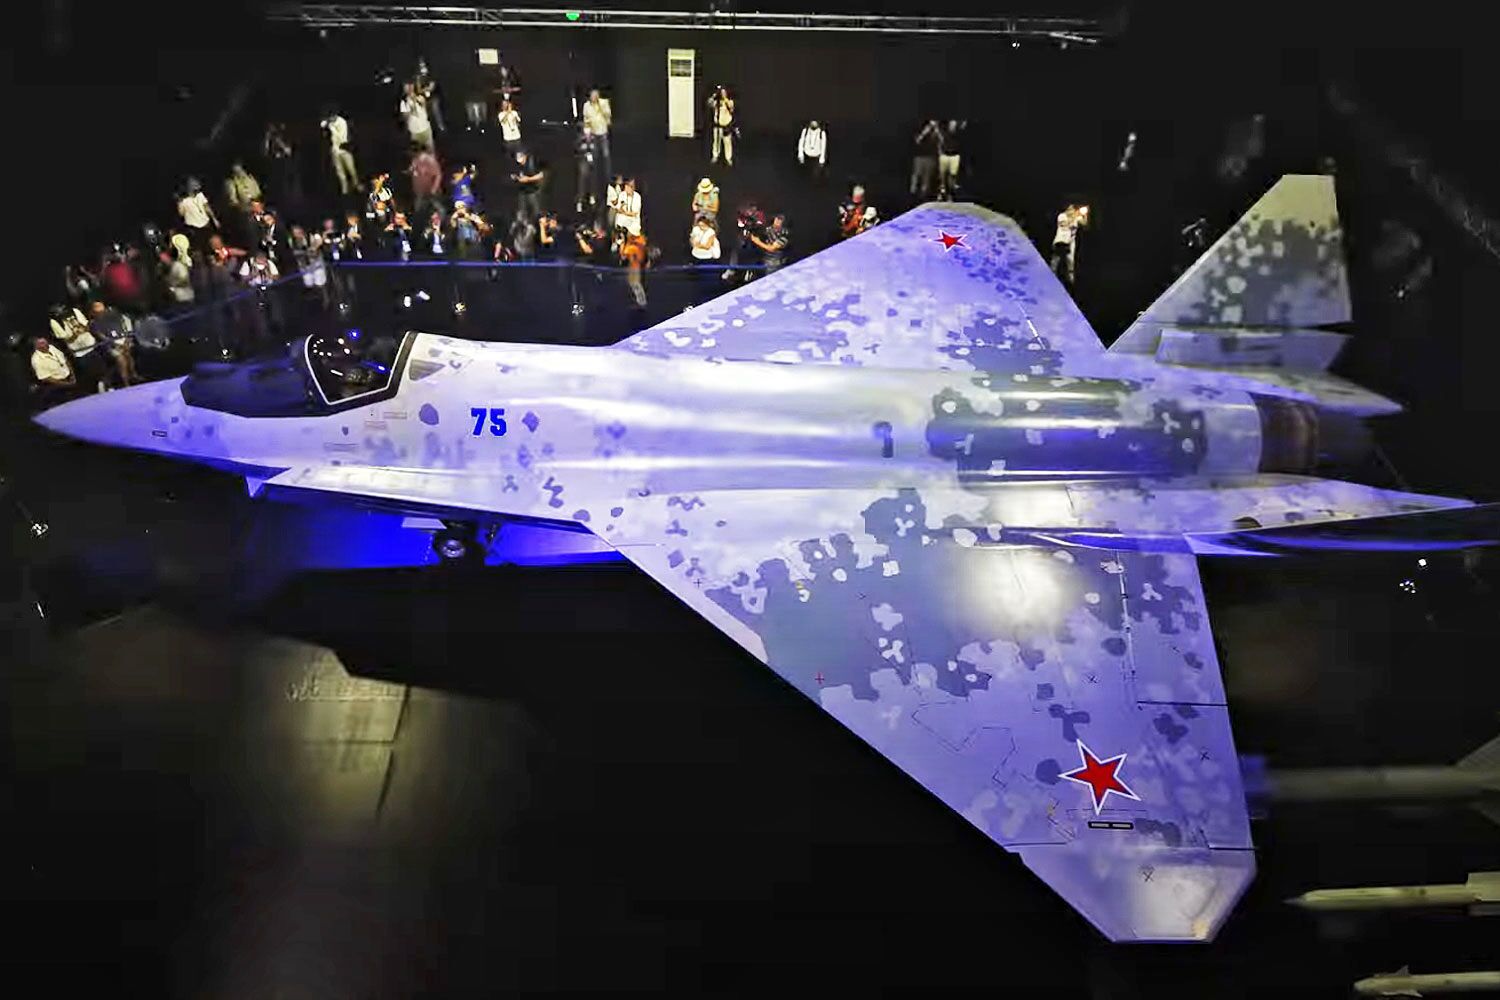 جدیدترین جنگنده نسل 5 روسیه/ سوخو ۷۵ را بشناسید